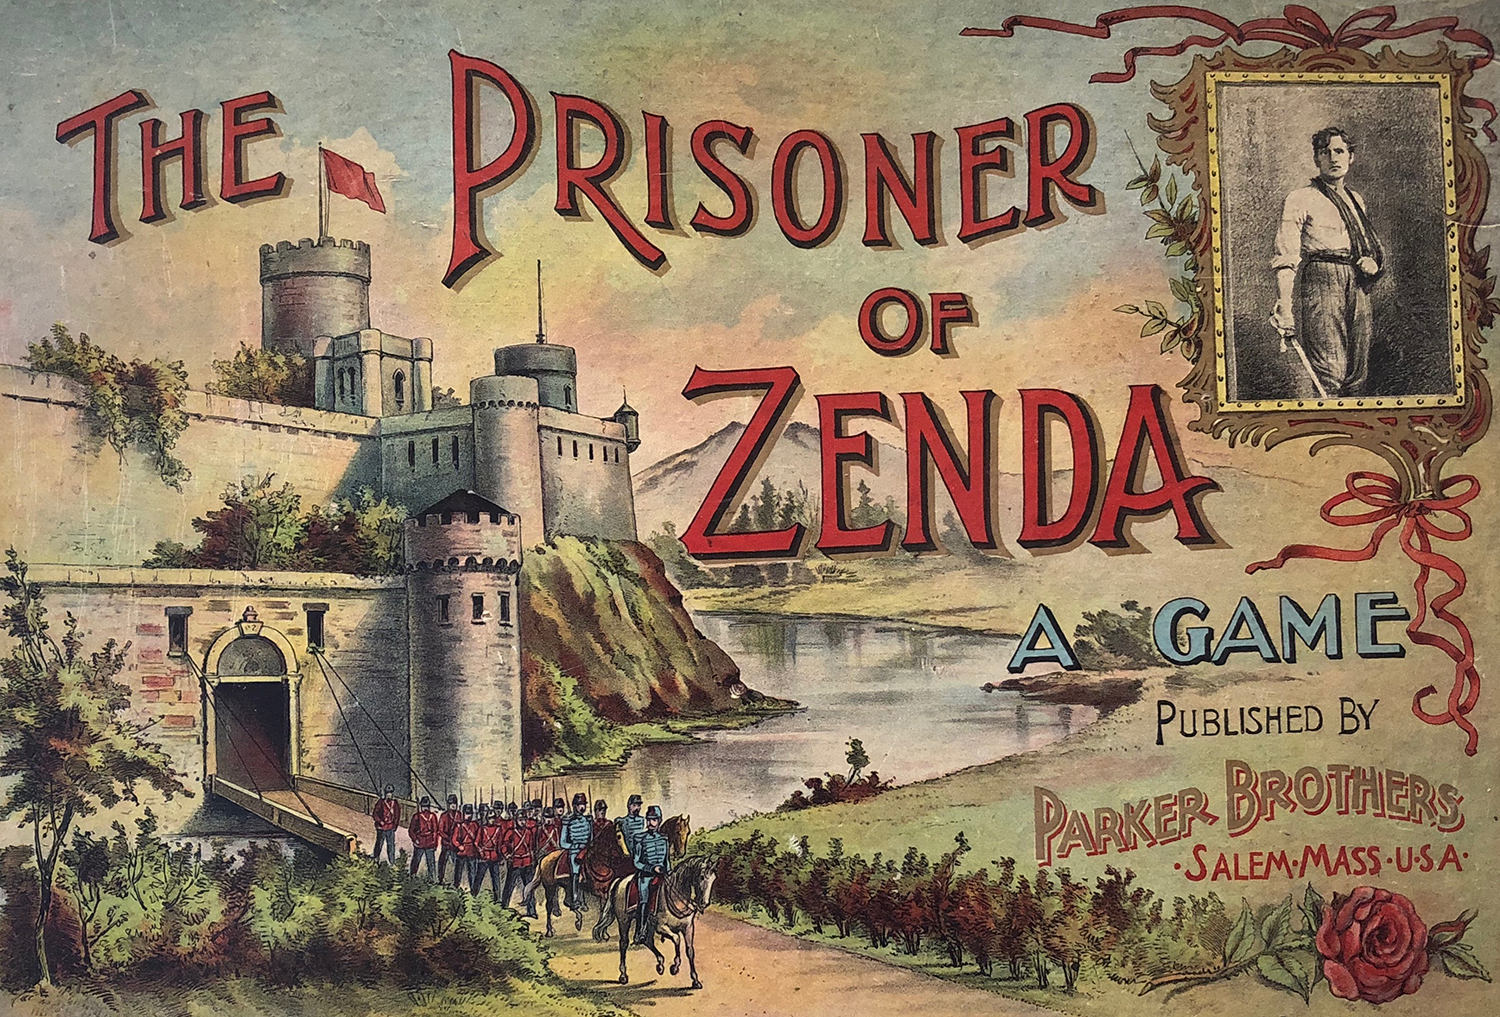 Board game version of The Prisoner of Zenda, 1896.